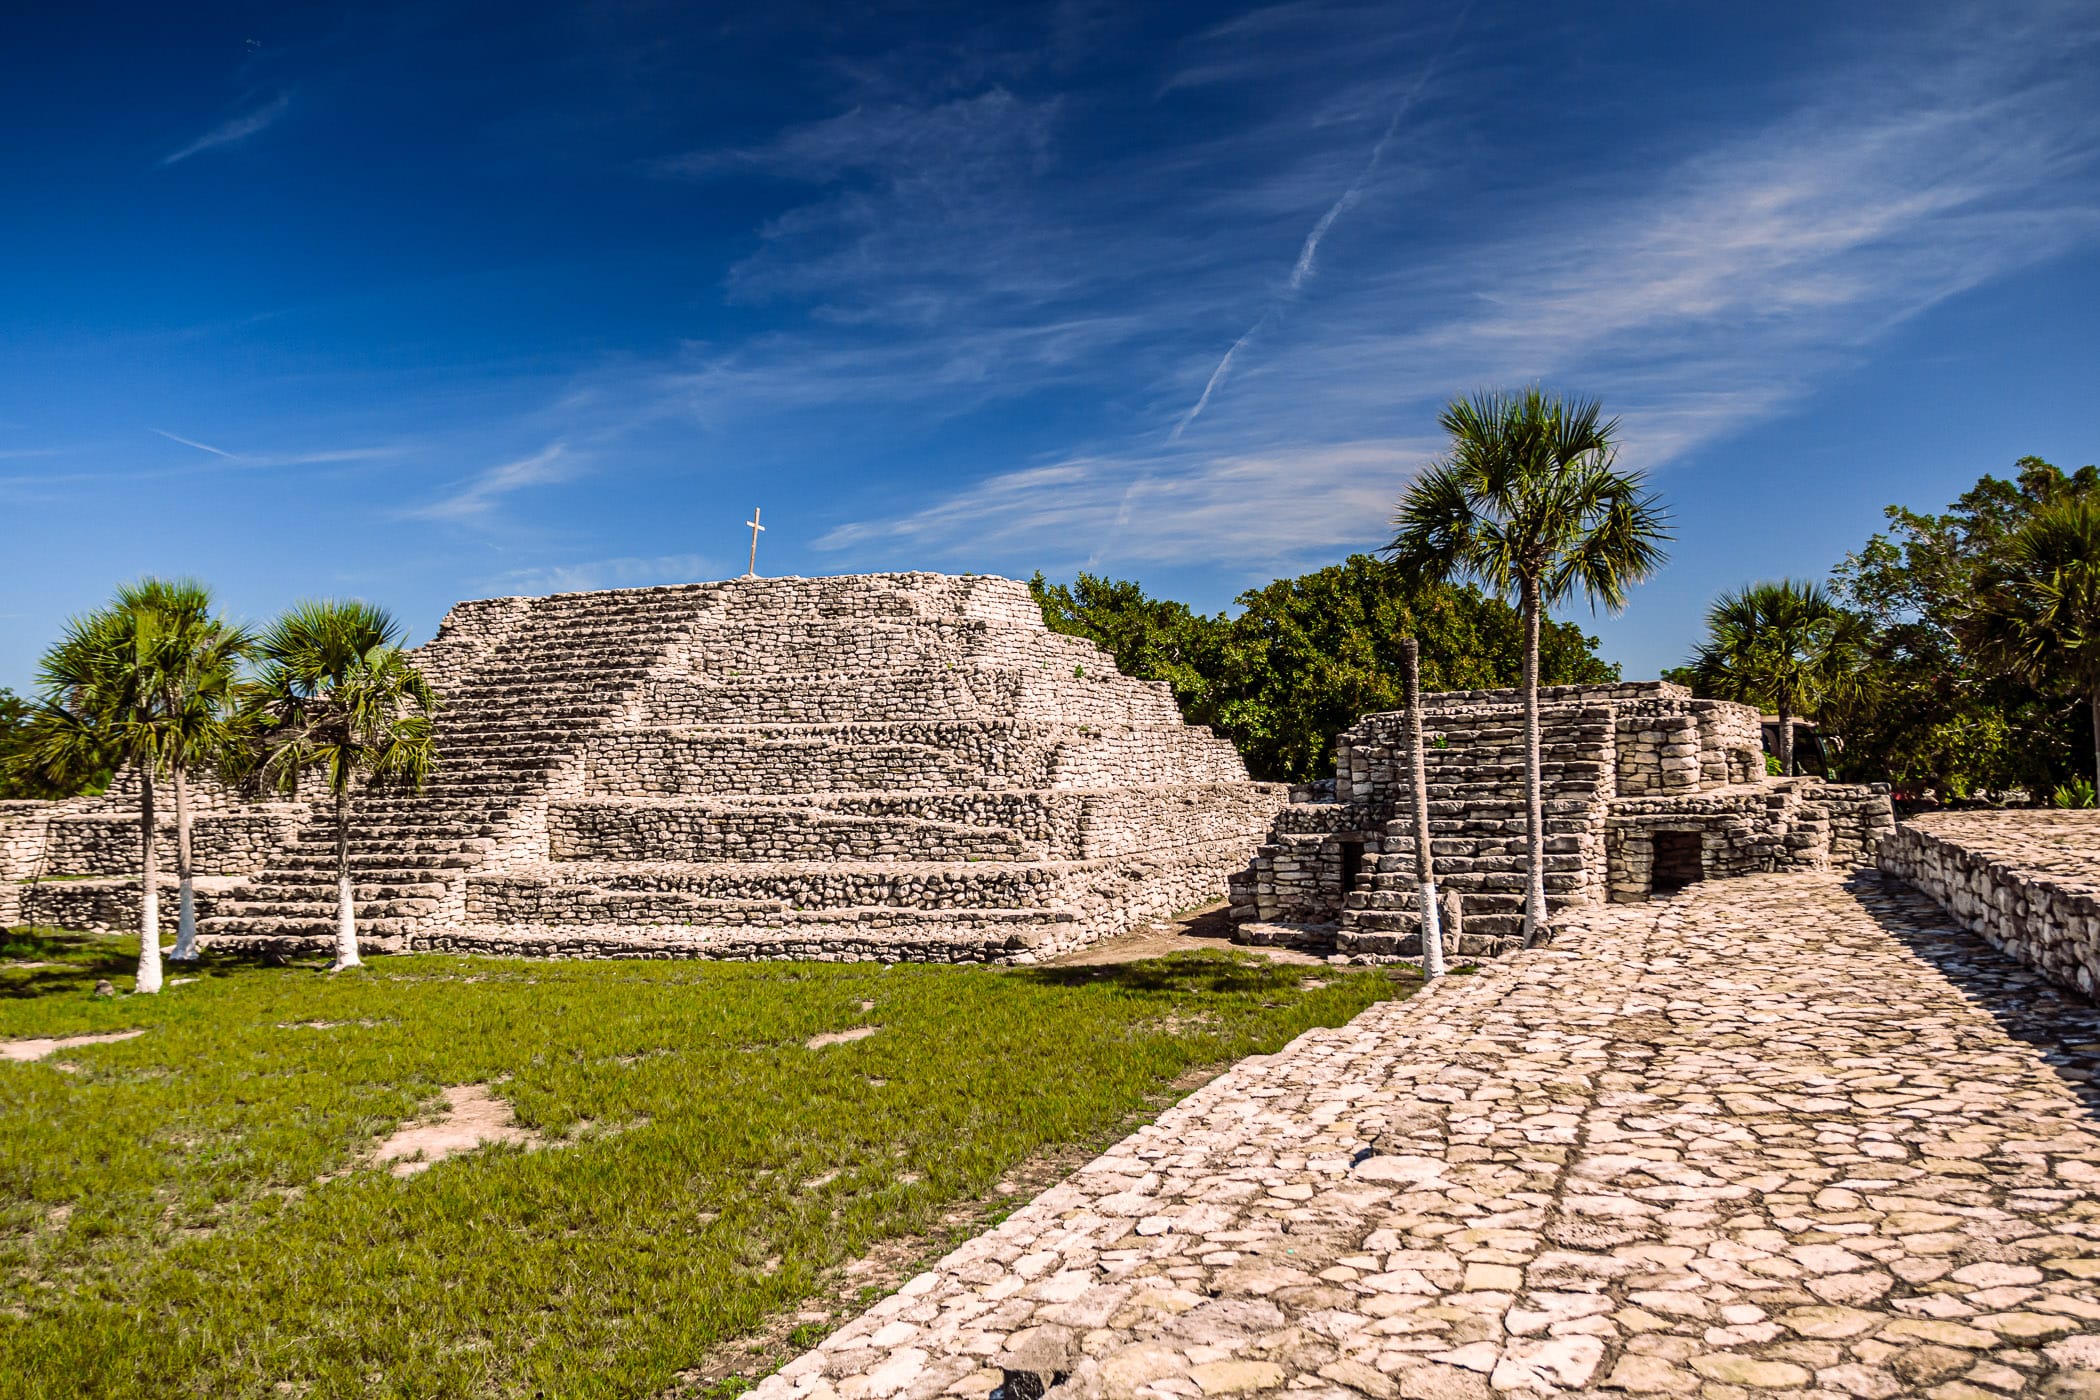 The ancient Mayan pyramid at Xcambo on the Yucatan Peninsula of Mexico.